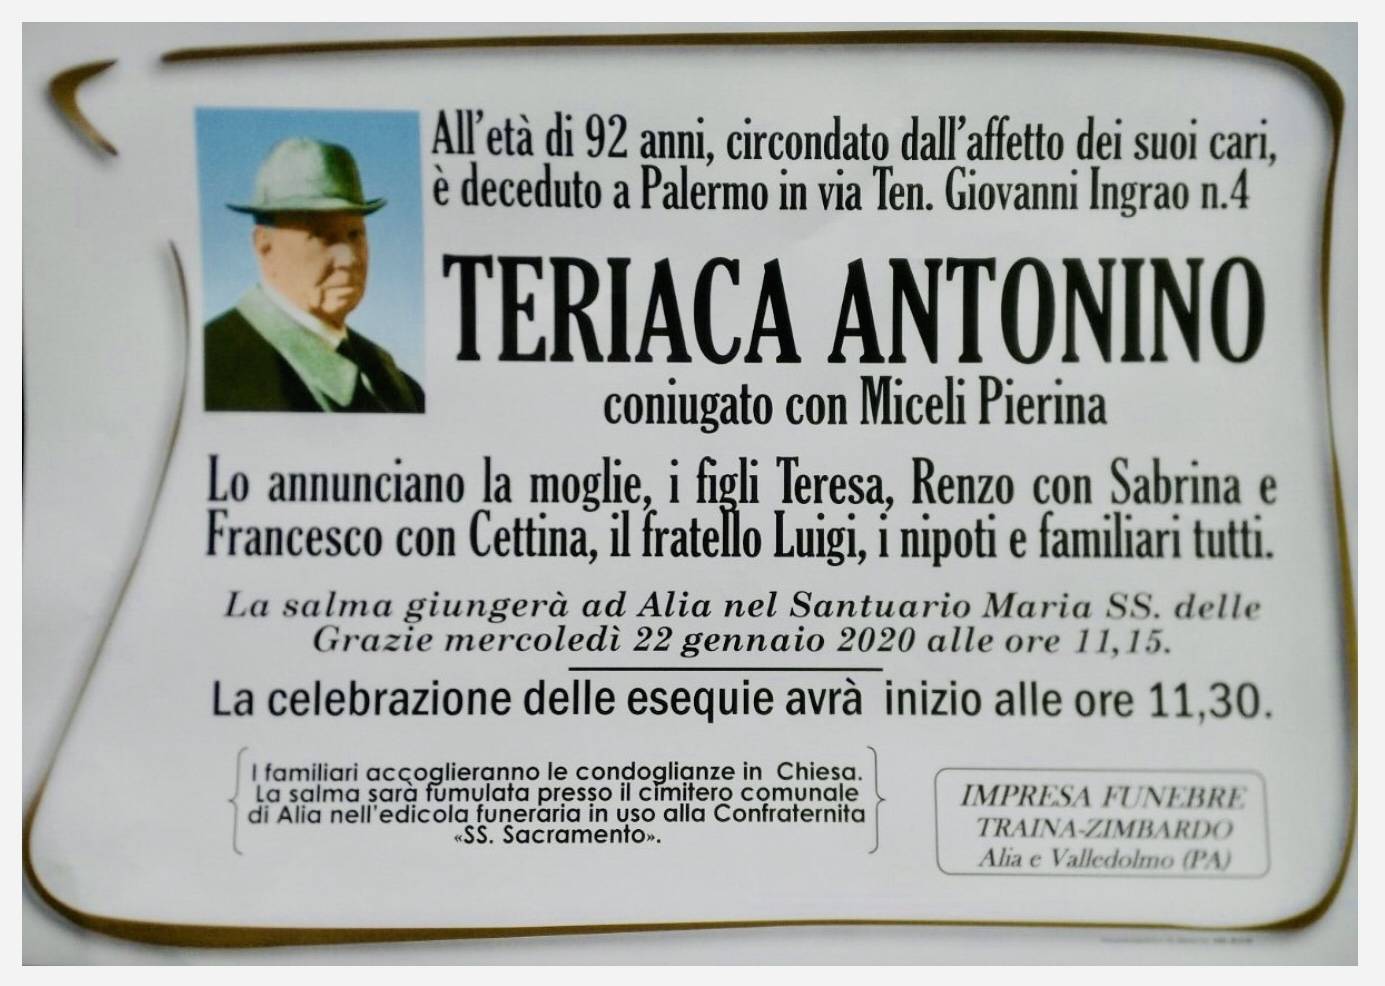 Antonino Teriaca